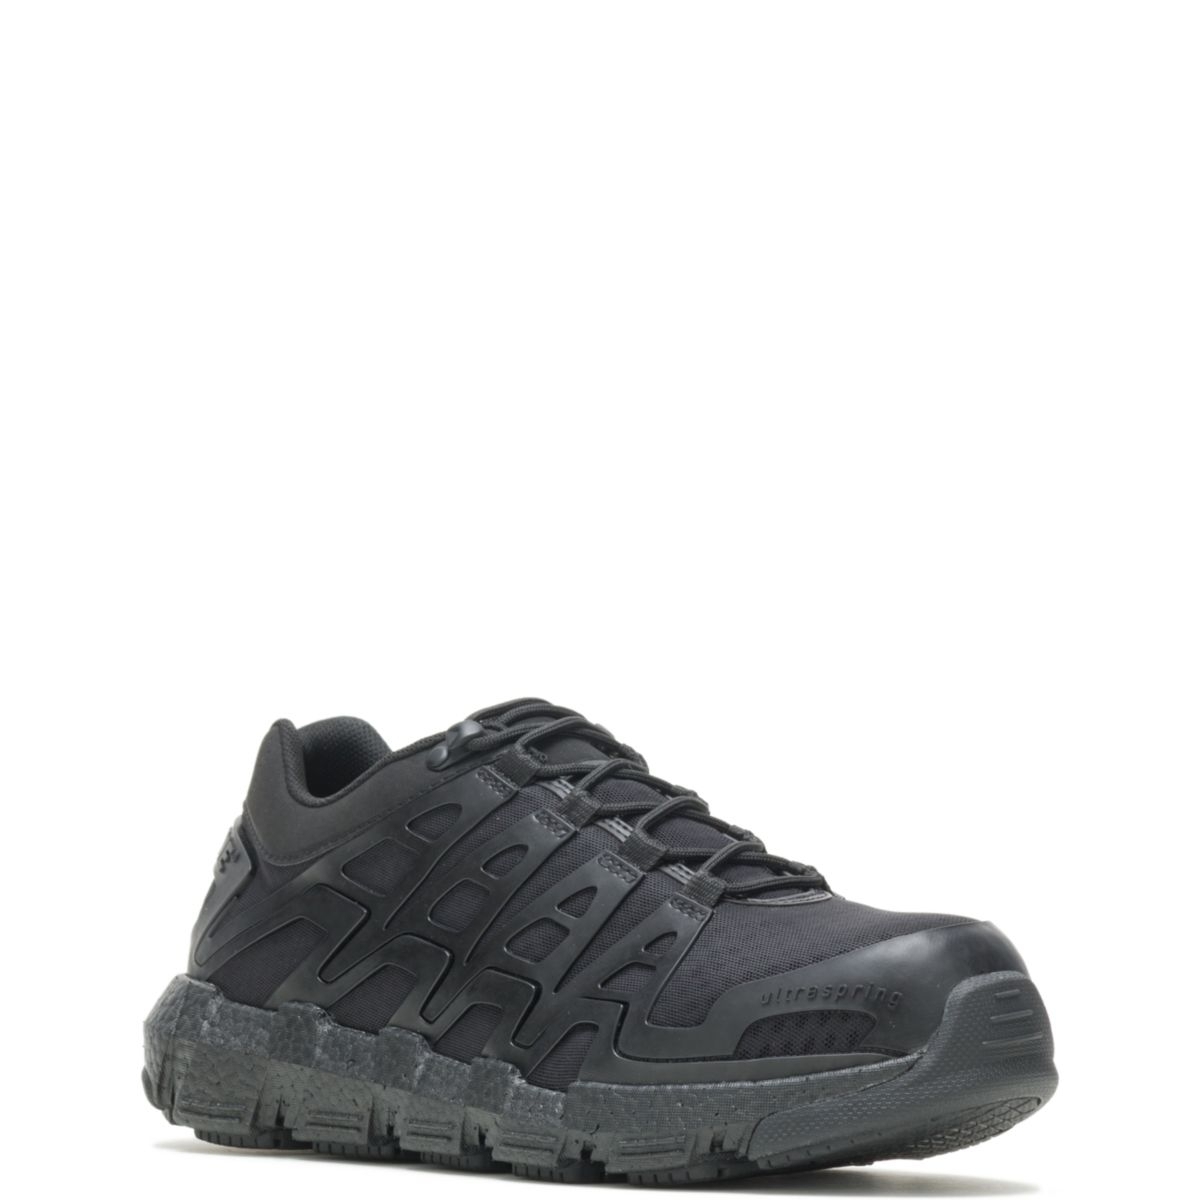 WOLVERINE Men's Rev Vent UltraSpringâ¢ DuraShocksÂ® CarbonMAXÂ® Composite Toe Work Shoe Black - W211017 BLACK - BLACK, 9.5